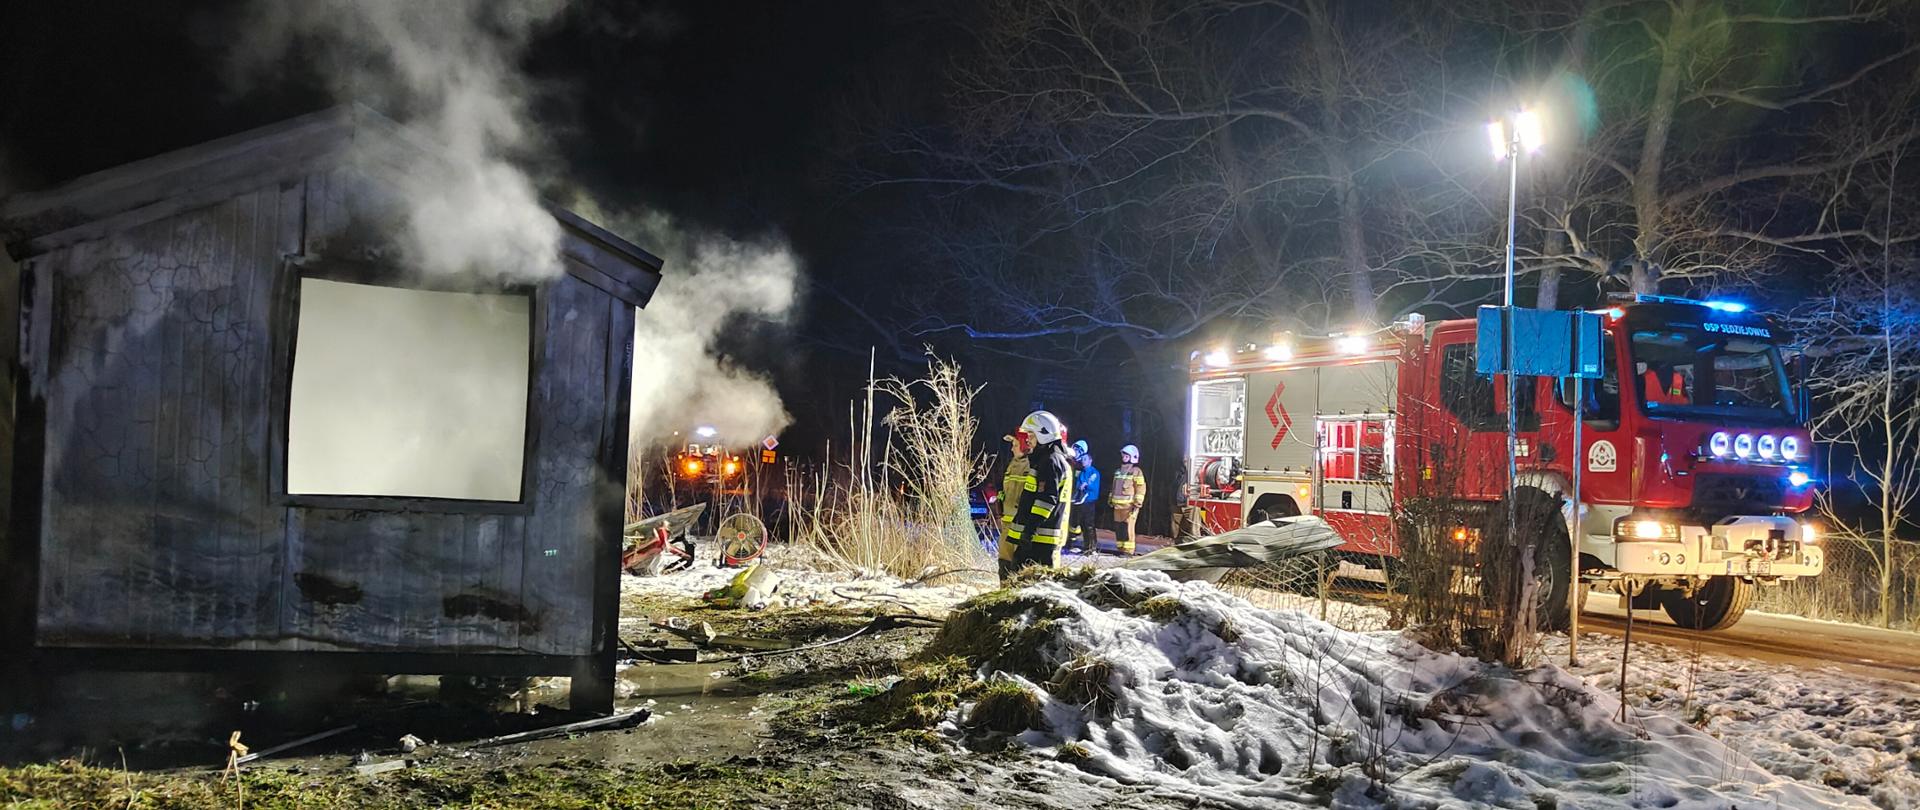 Na zdjęciu po lewej stronie widać spalony kontener letniskowy, po prawej zaś samochód pożarniczy. W centralnej części fotografii widać ratownika, a w głębi na nim innych strażaków.